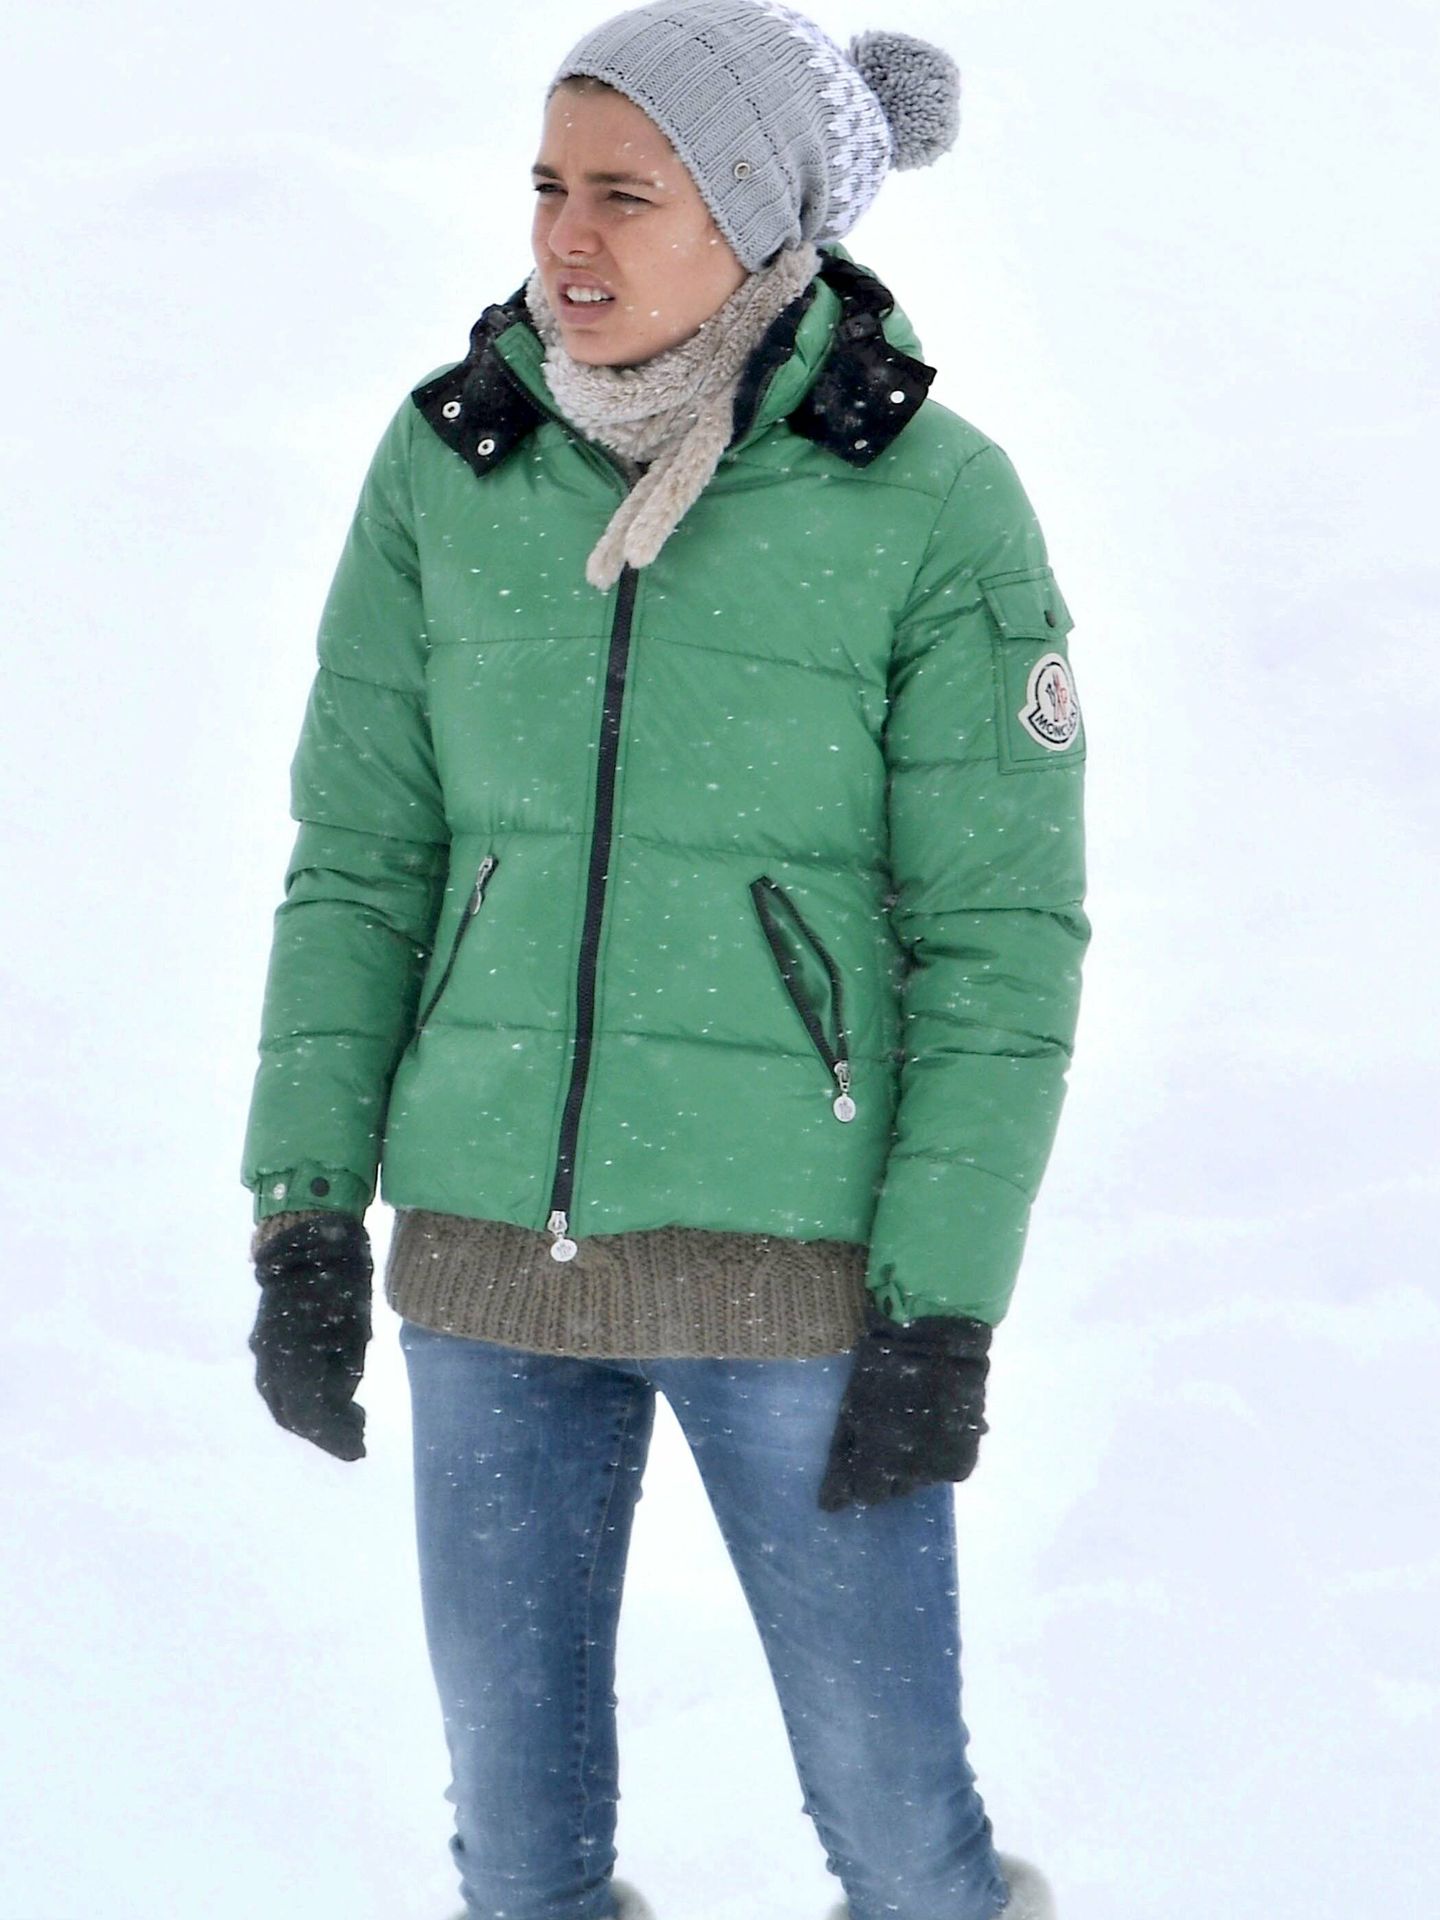 Carlota Casiraghi, en la nieve. (CP)